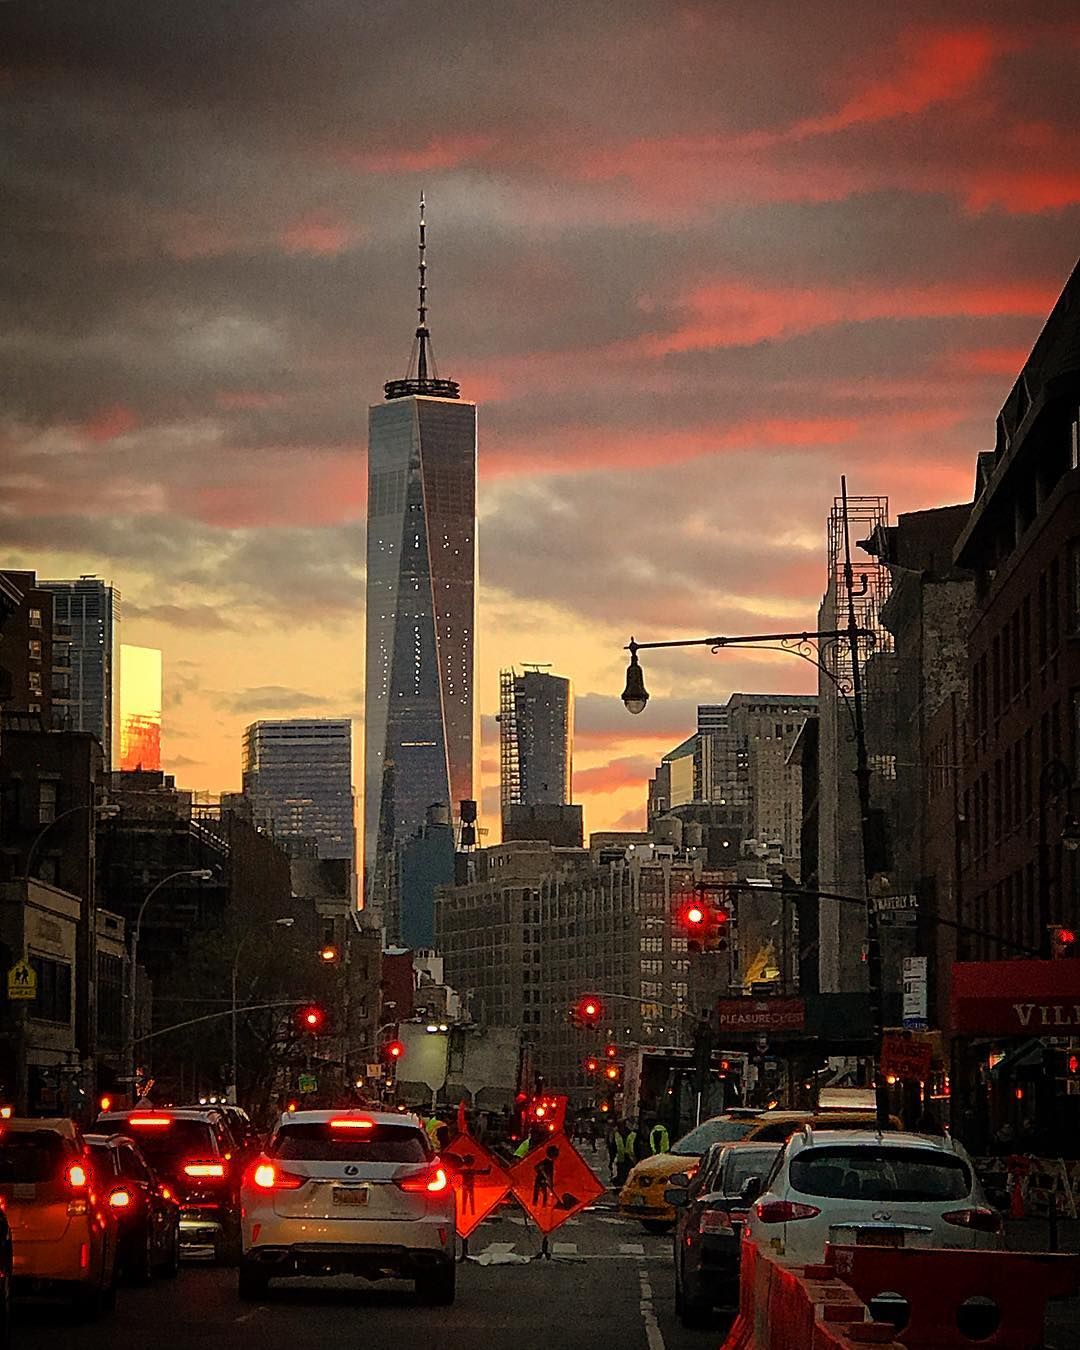 New York sunset tonight. Have a wonderful week ahead ððð?¼